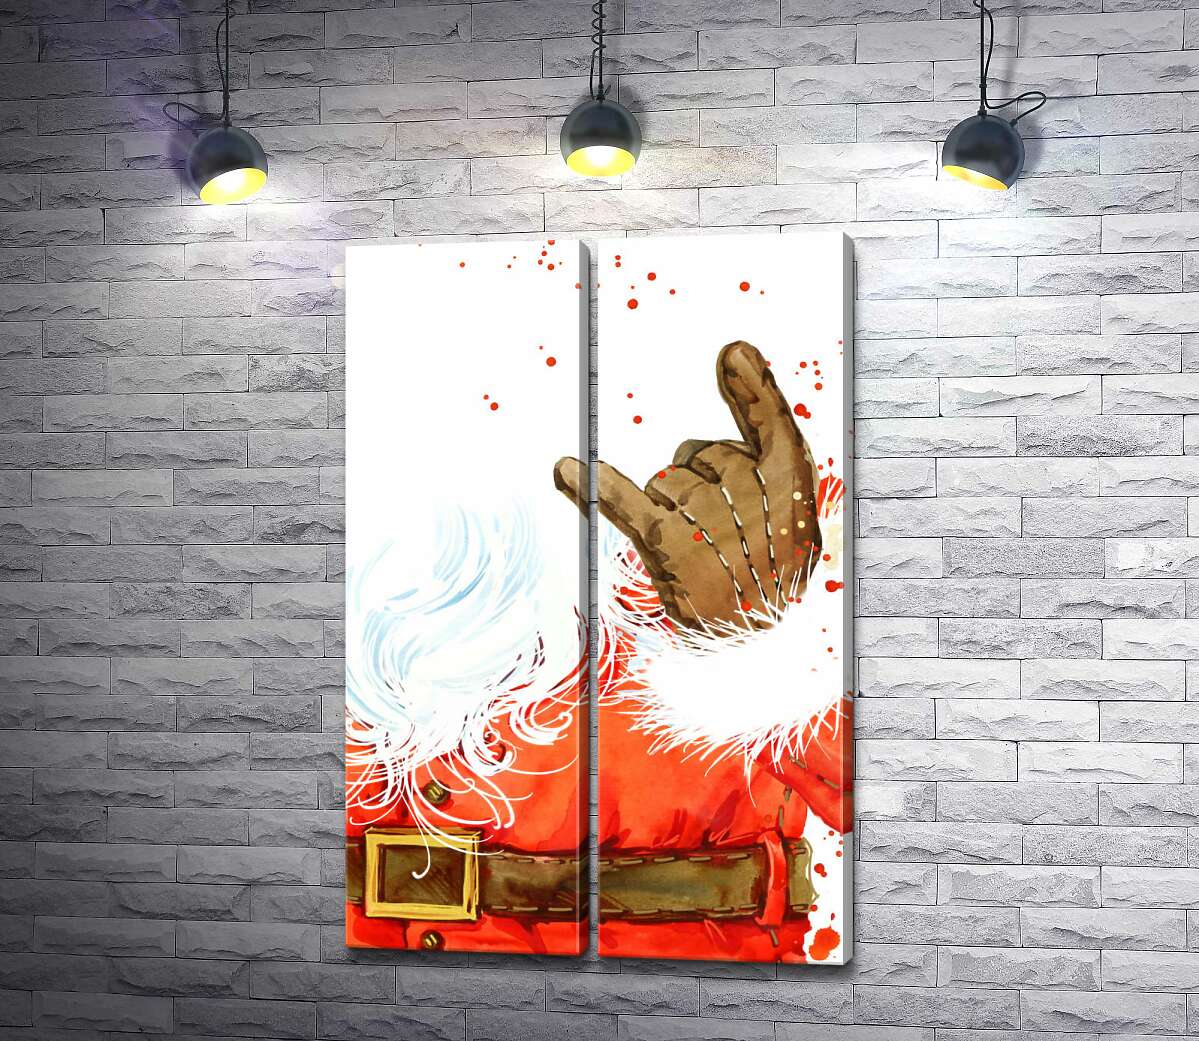 модульна картина Санта-Клаус показує рокерський жест